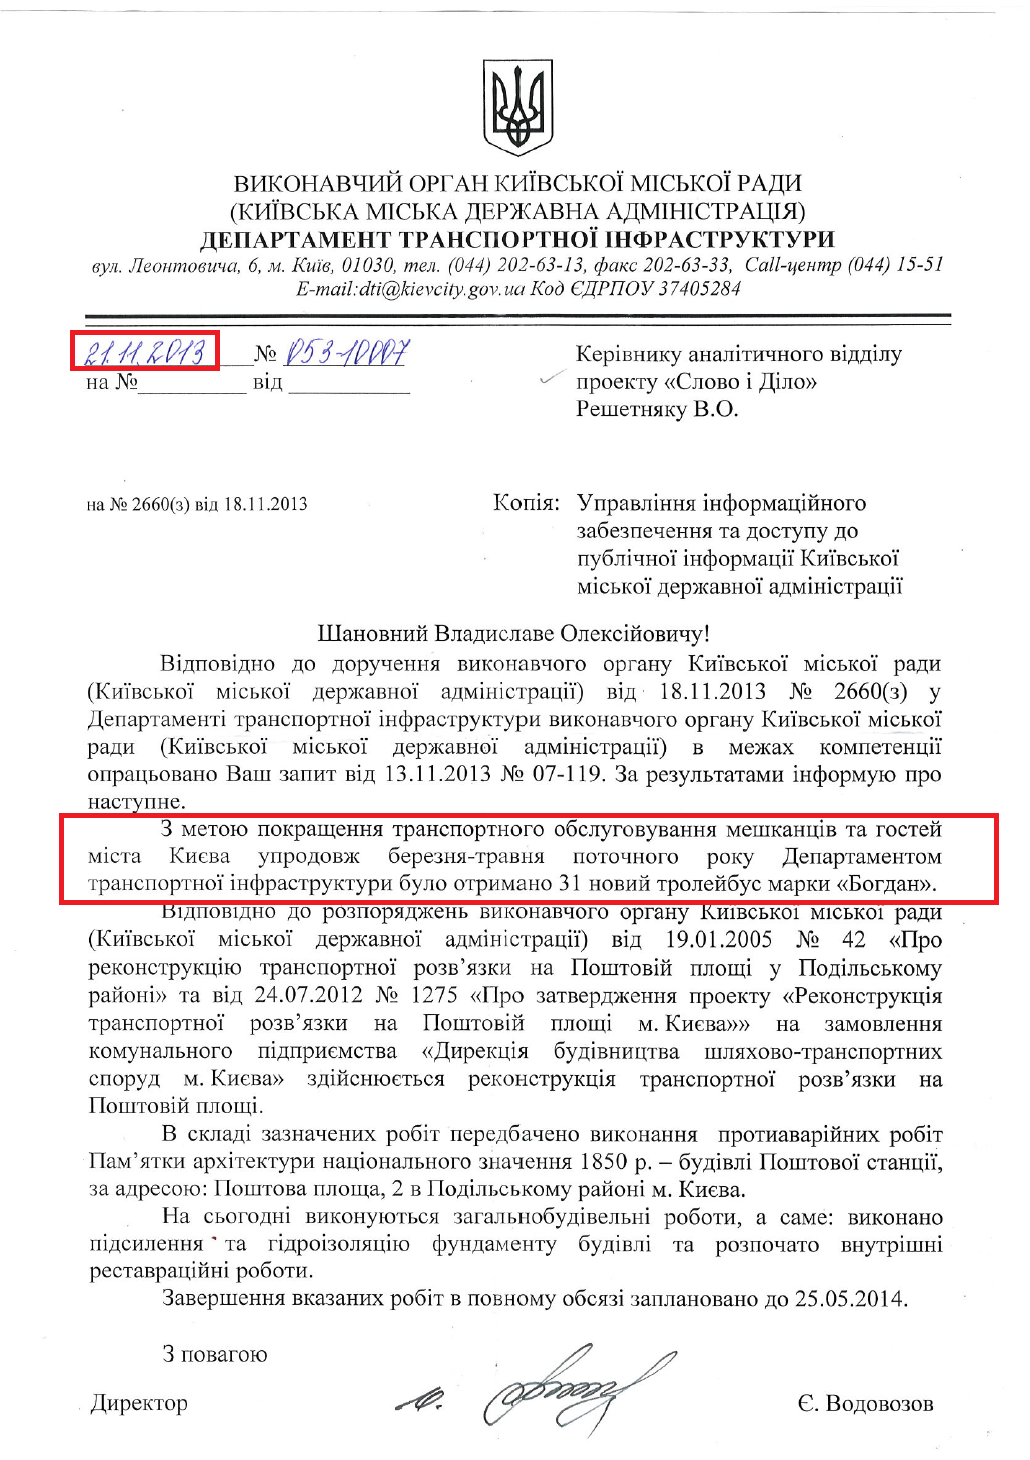 Лист директора Департаменту транспортної інфрастуктури КМДА Є. Водовозова №053-10007 від 21.11.2013 р.